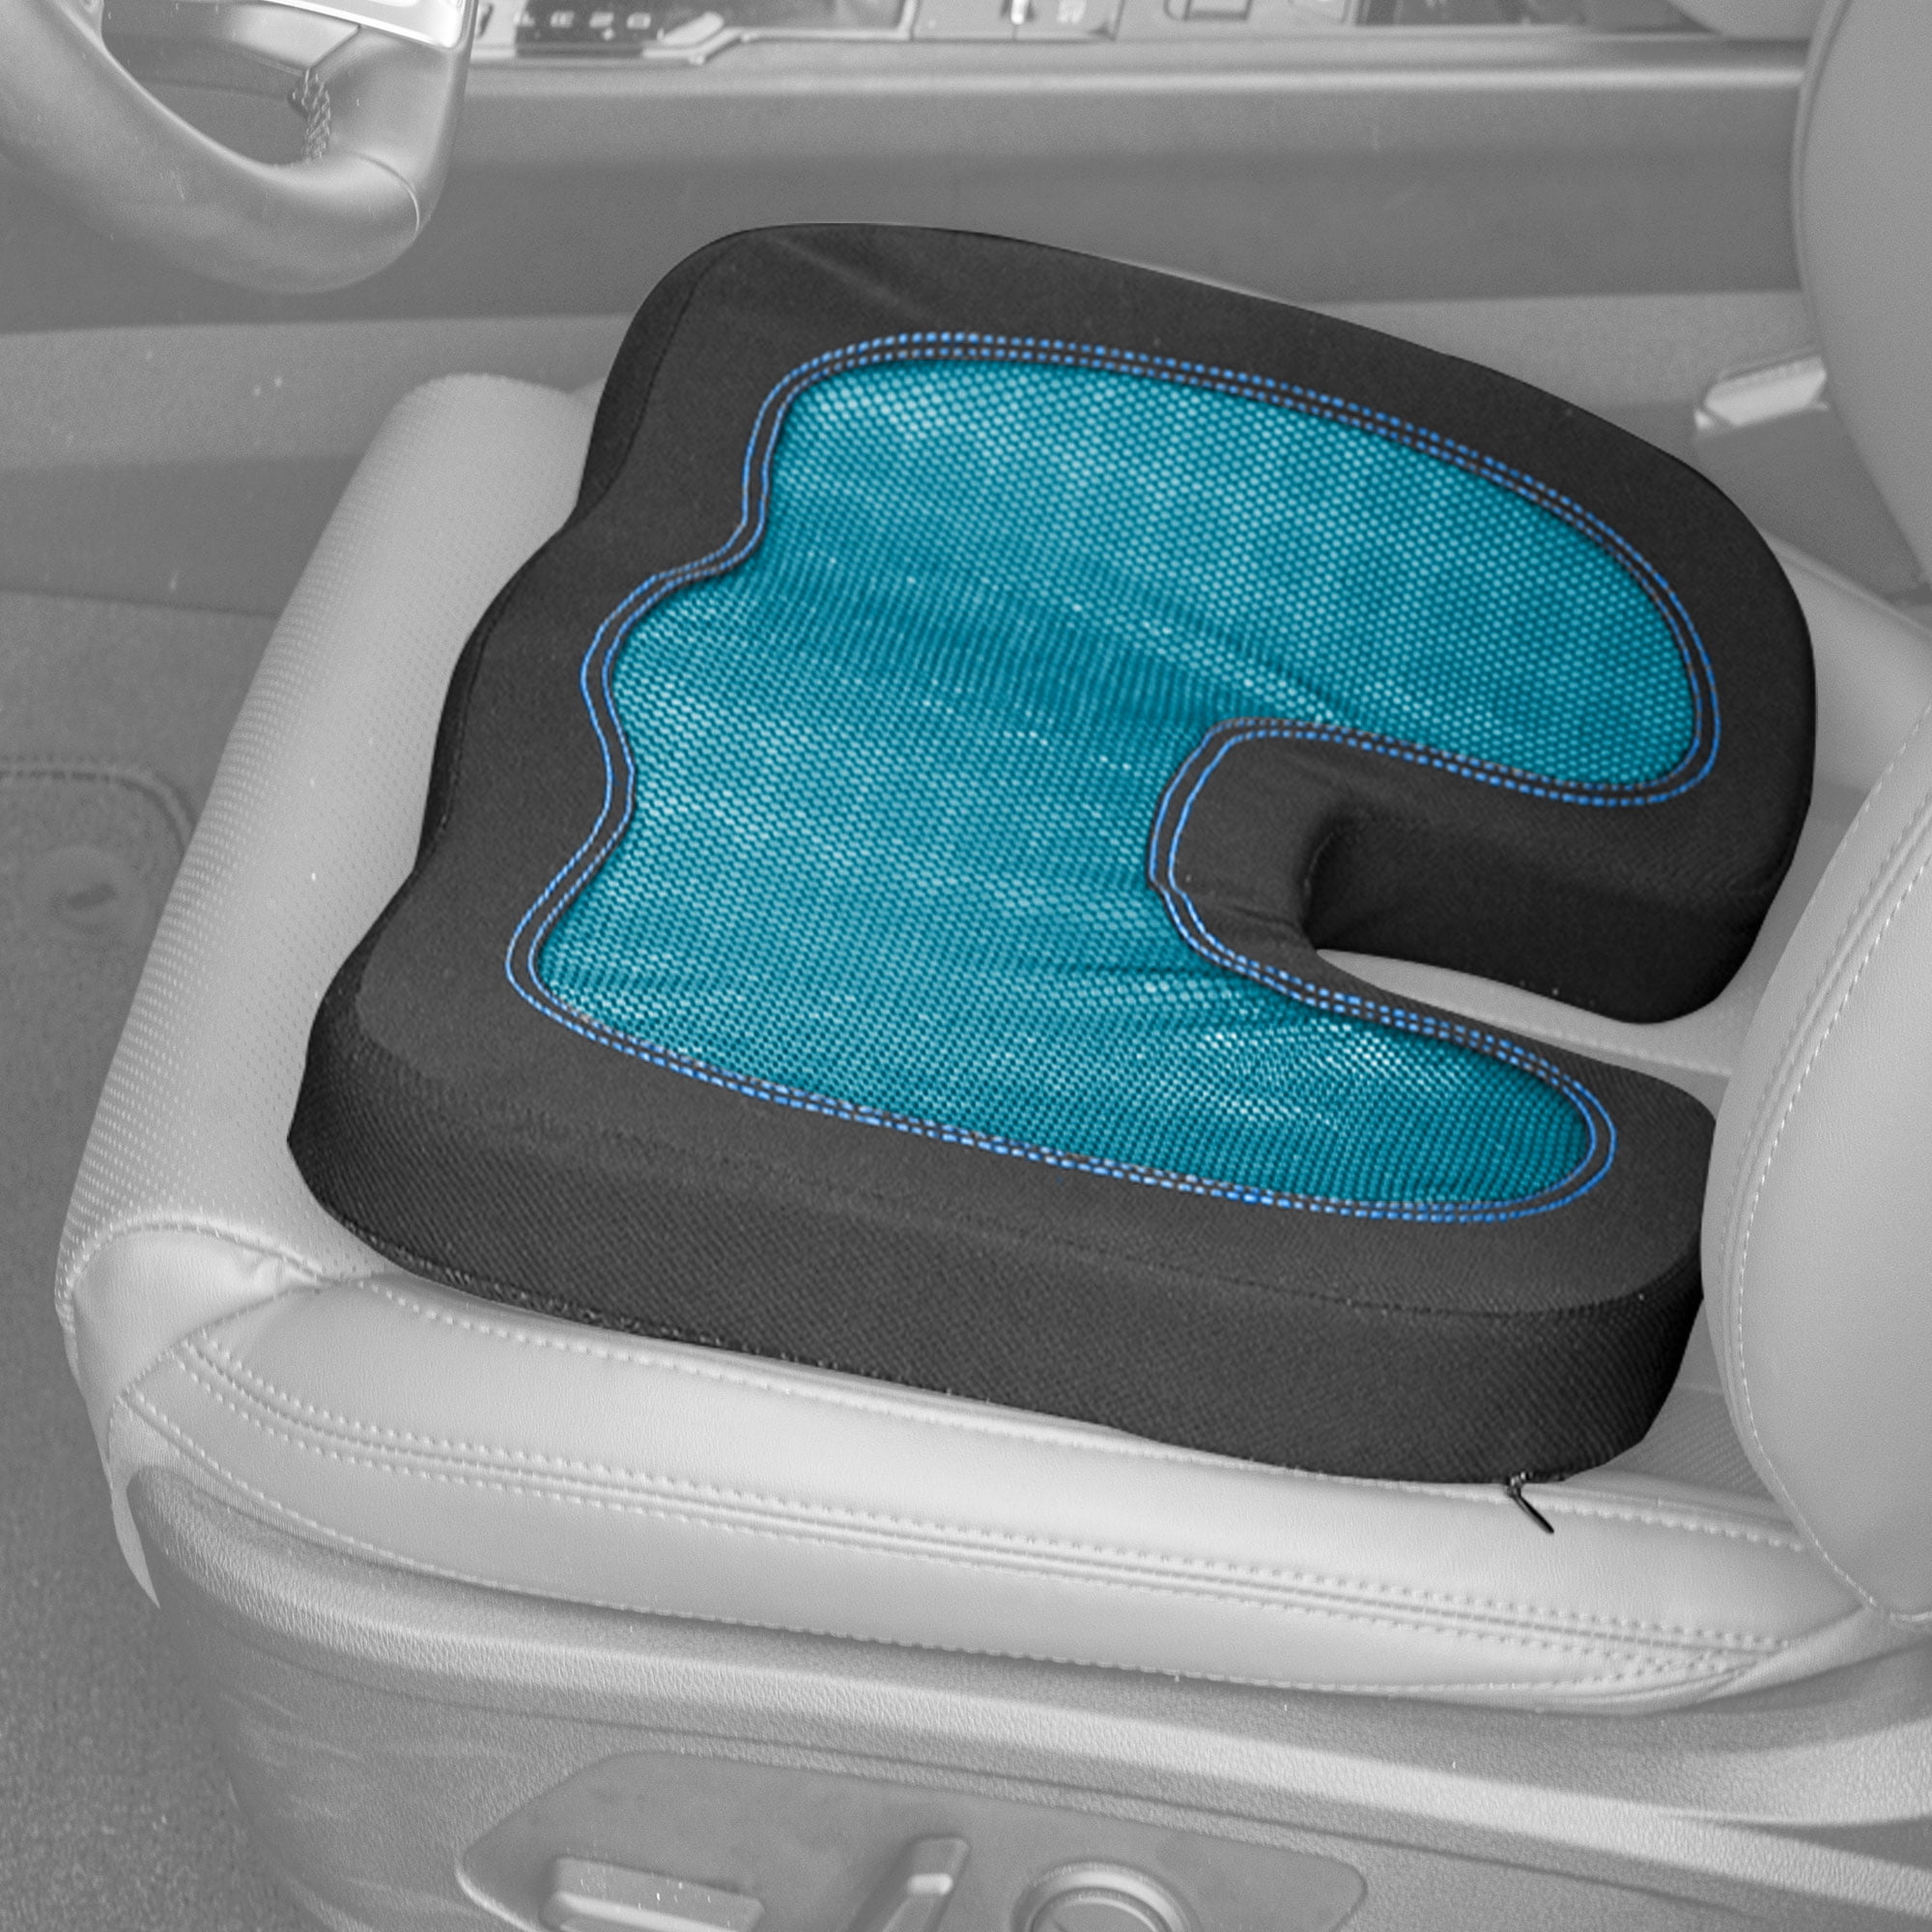 Karman Cu-GFR 22 inch Universal Gel/Foam Seat Cushion